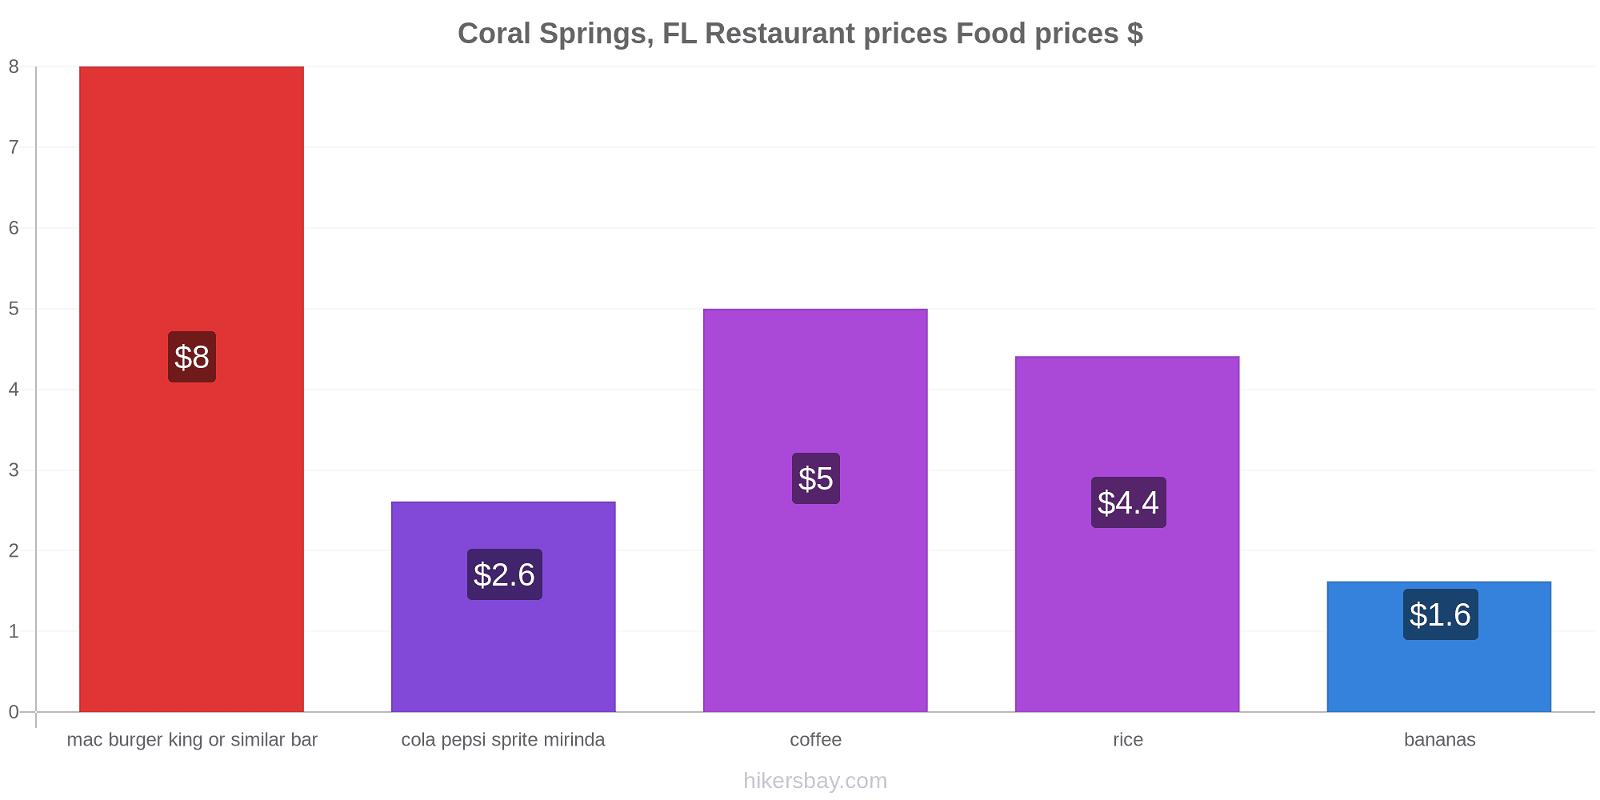 Coral Springs, FL price changes hikersbay.com